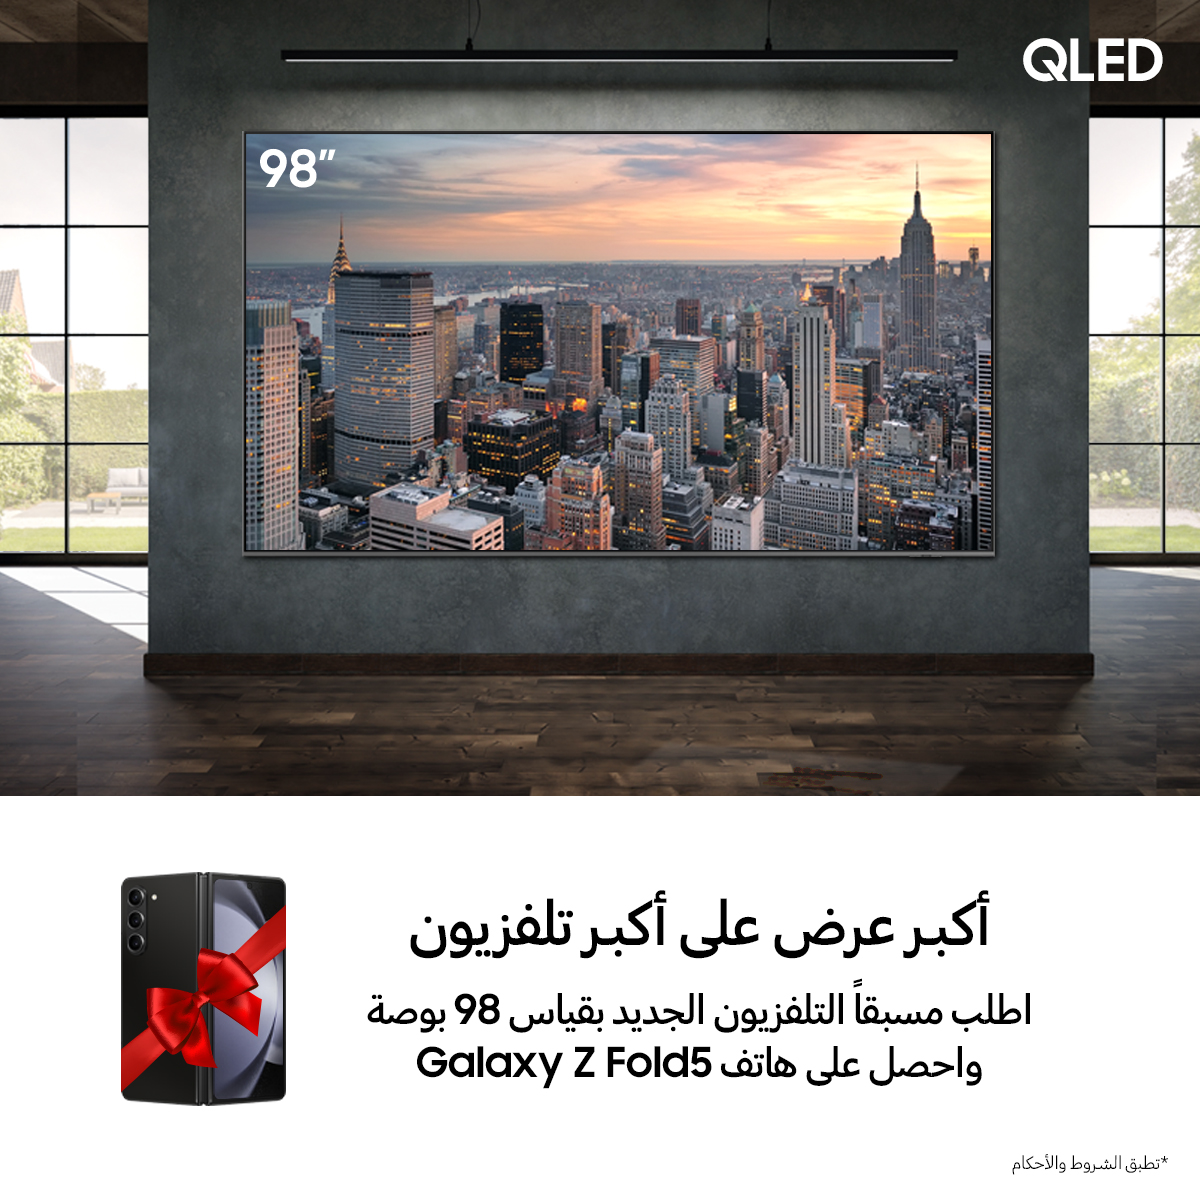 سامسونج إلكترونيكس تطلق حملة الطلب المسبق على تلفزيون QLED 4K مقاس 98 بوصة في العراق بسعر مميّز ومع هدية قيّمة للمشترين الأوائل